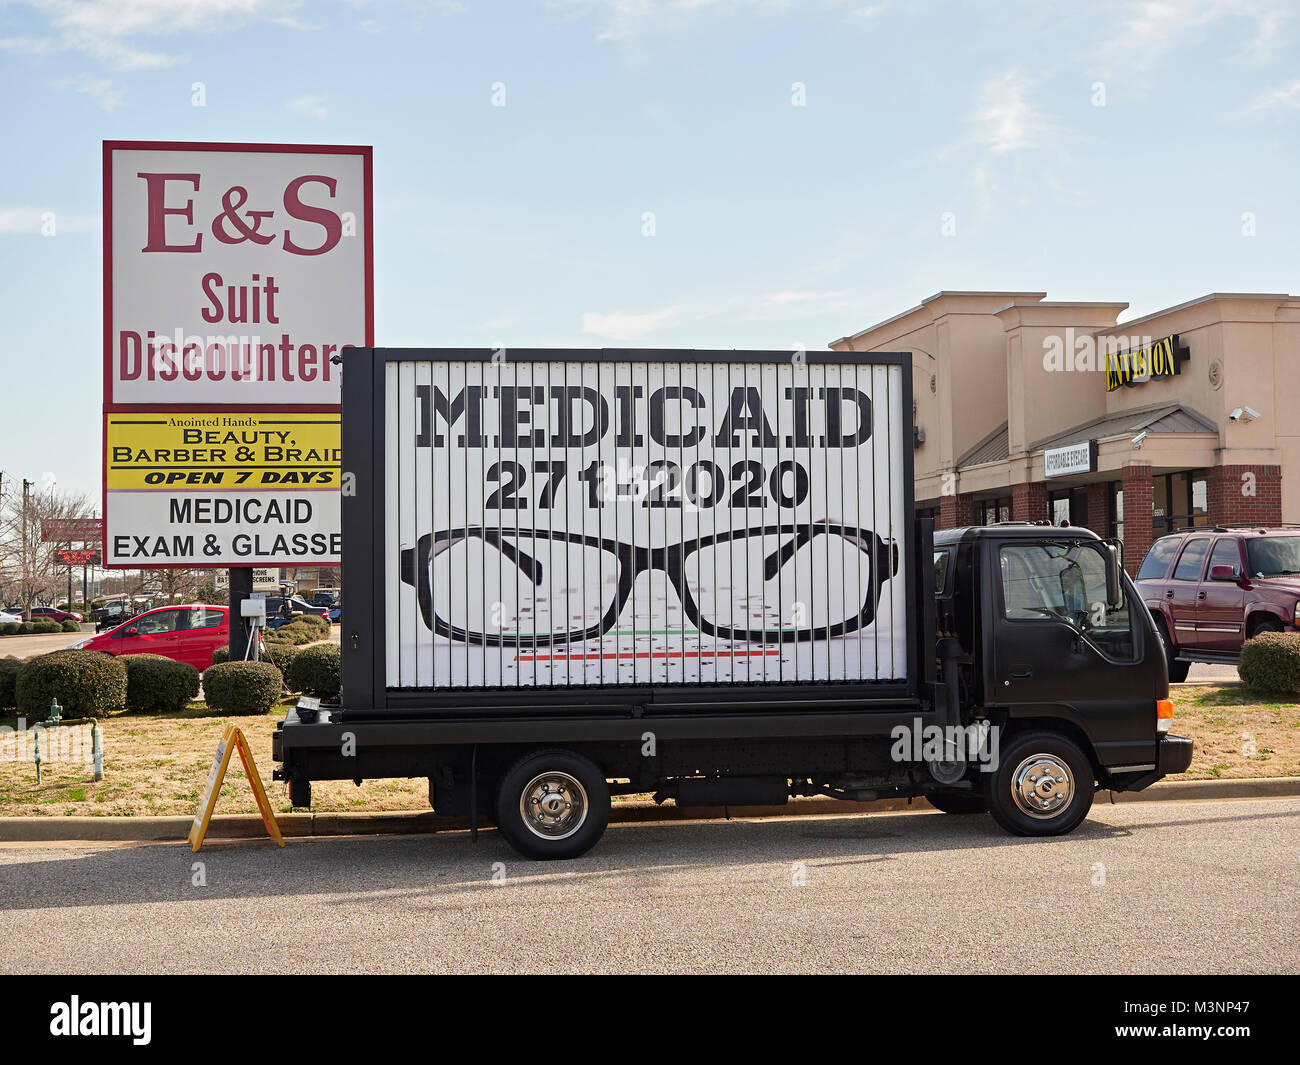 Gran cartel sobre un camión de publicidad gratuita de Medicaid exámenes oculares para los pobres en Montgomery, Alabama, Estados Unidos. Asistencia sanitaria gratuita concepto o conceptos. Foto de stock